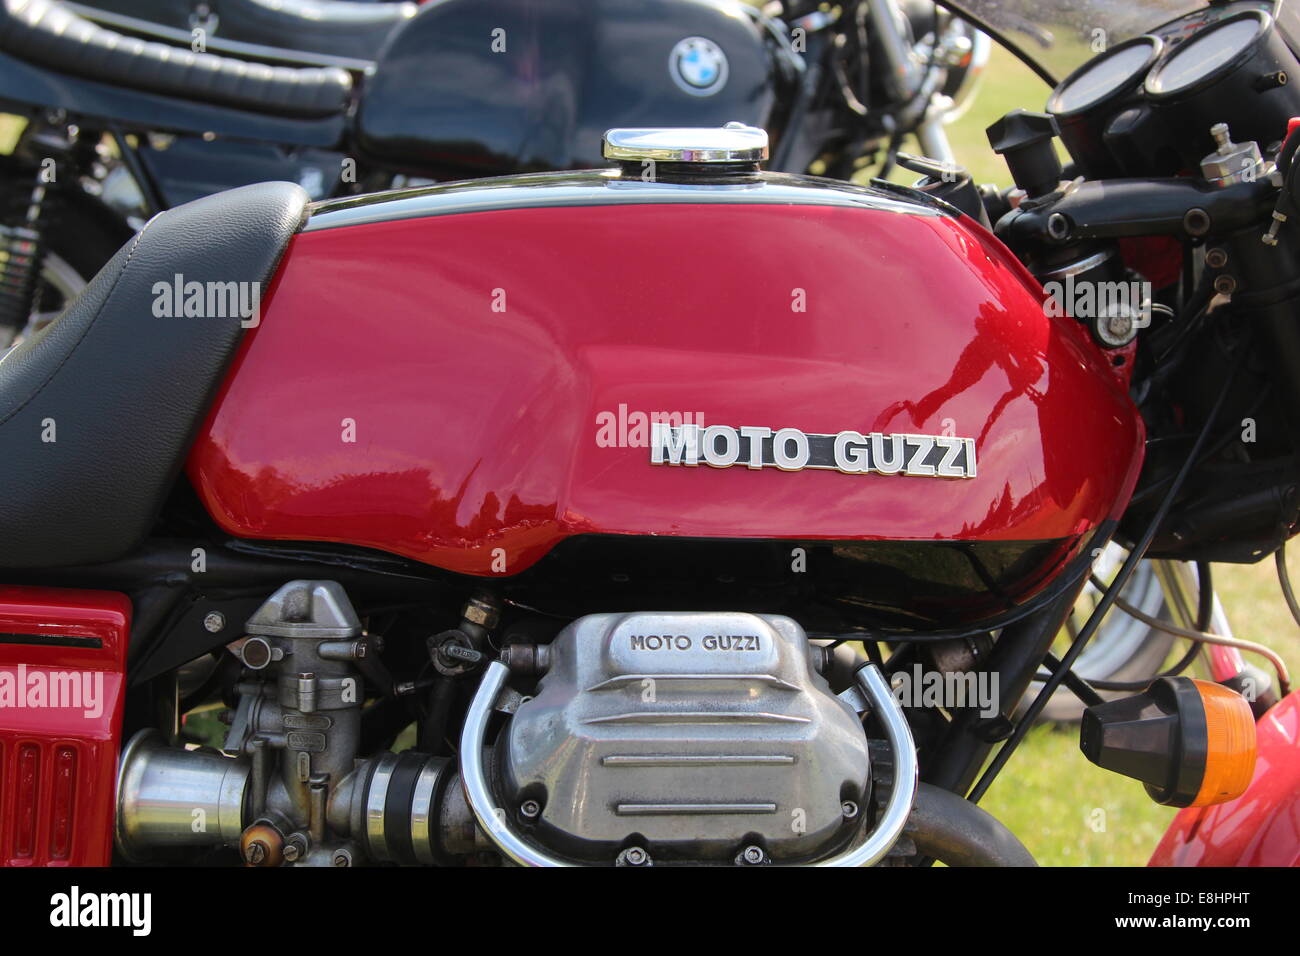 Petrol tank of a Moto Guzzi motorbike Stock Photo - Alamy